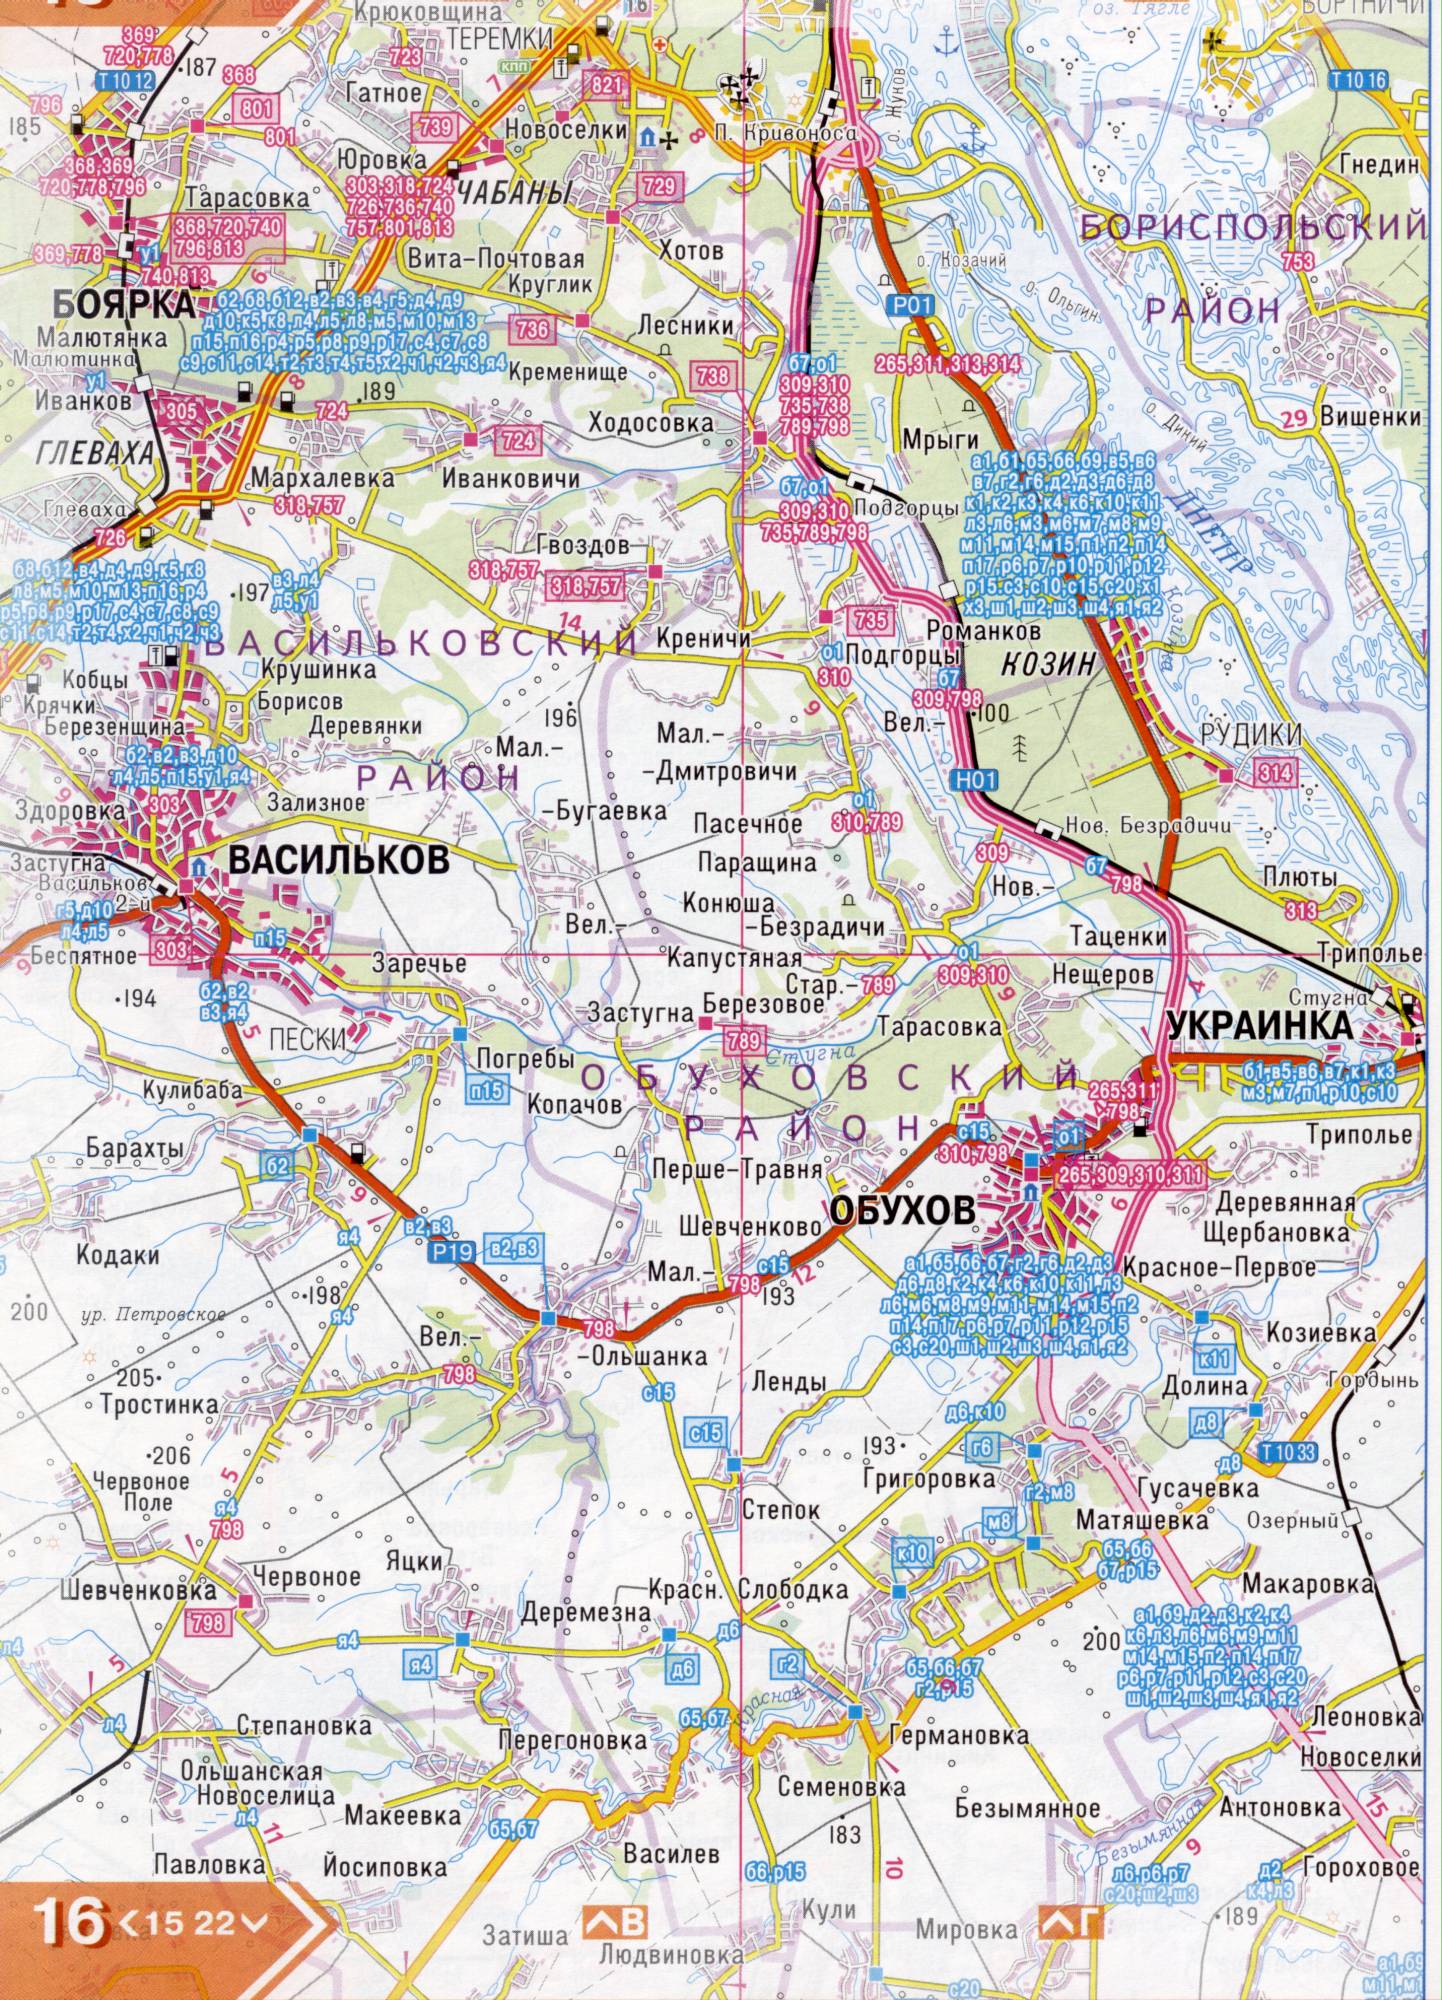 Atlas von der Region Kiew. Eine detaillierte Karte der Region Kiew von dem Atlas von Autobahnen. Kiewer Gebiet auf einer detaillierten Karte Maßstab 1cm = 3km. Herunterladen frei, C3 - Vasilkov